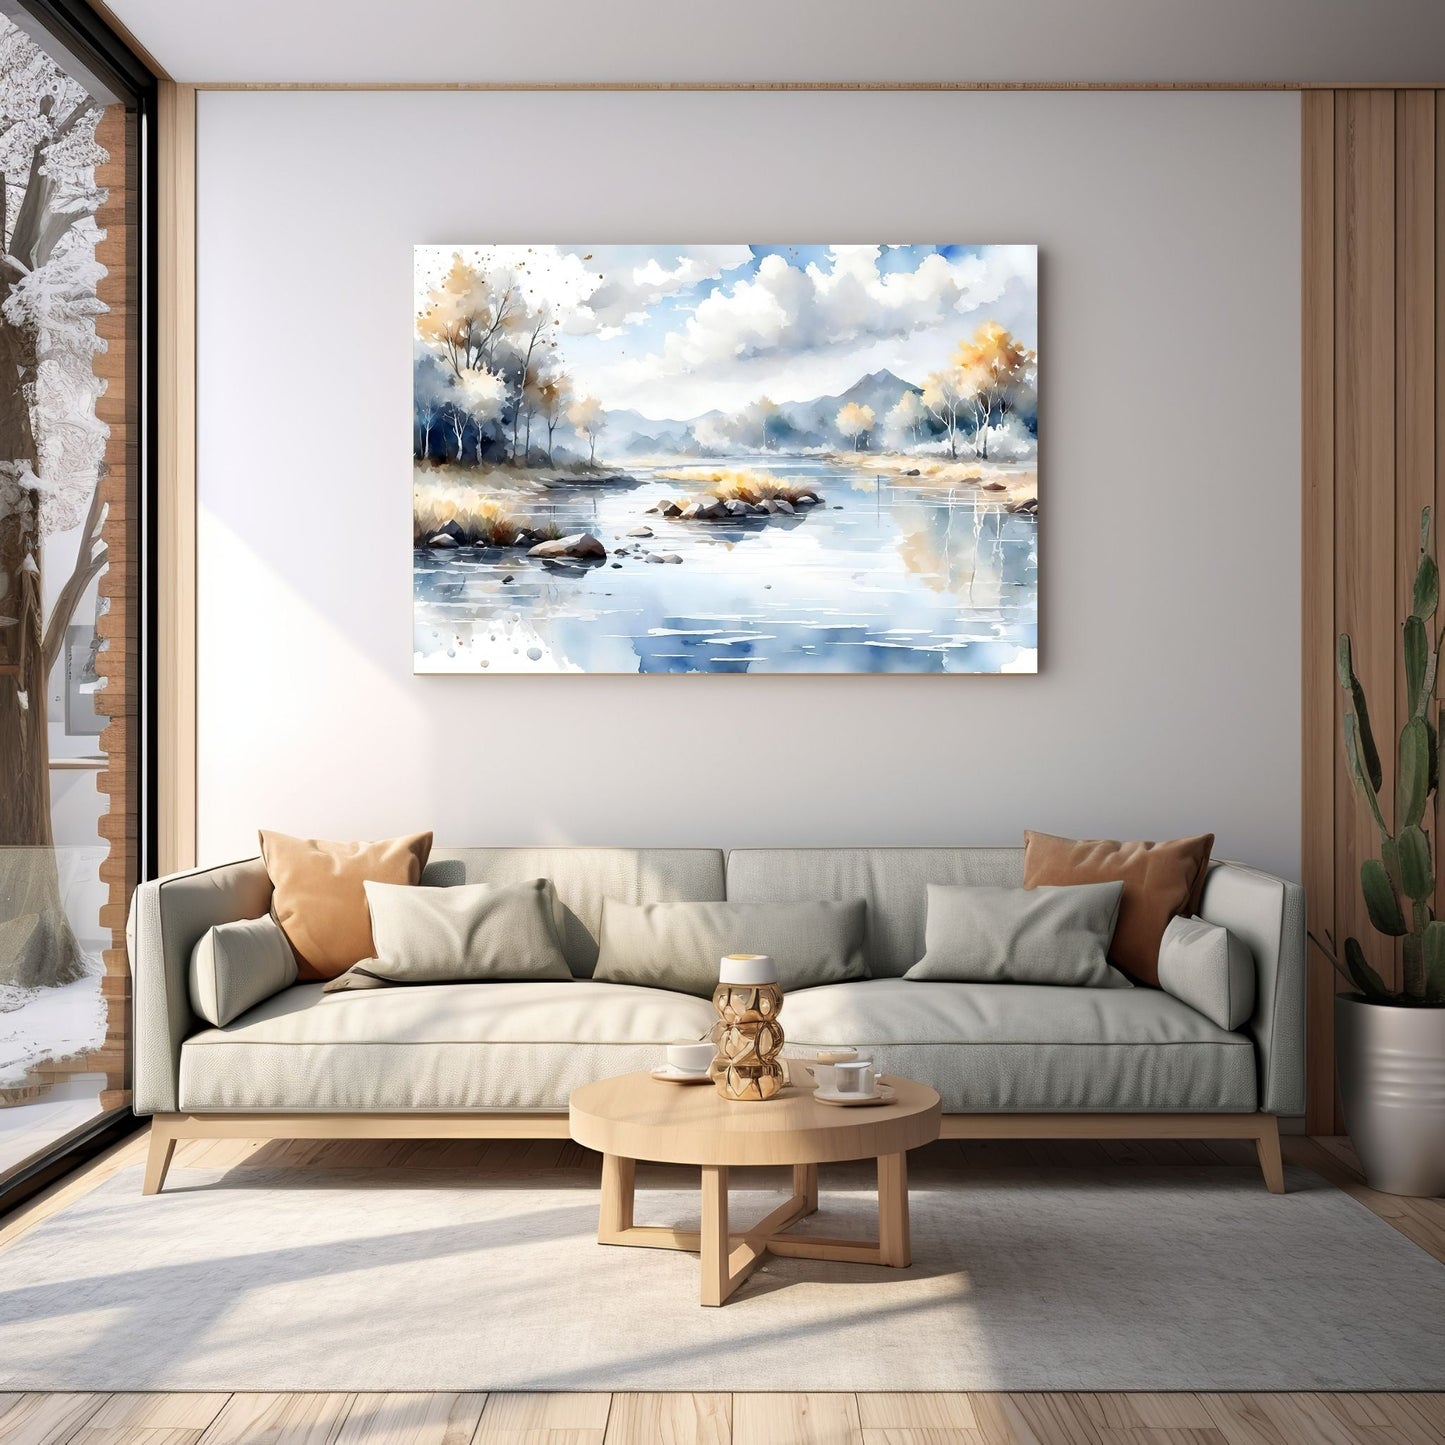 Digitalt kunstmaleri i akvarell som fanger essensen av en magisk høstdag, med et blendende landskap av skiftende løvverk, majestetiske trær og en sakteflytende elv. Illustrasjonsfoto viser motivet på lerret som henger over en sofa.